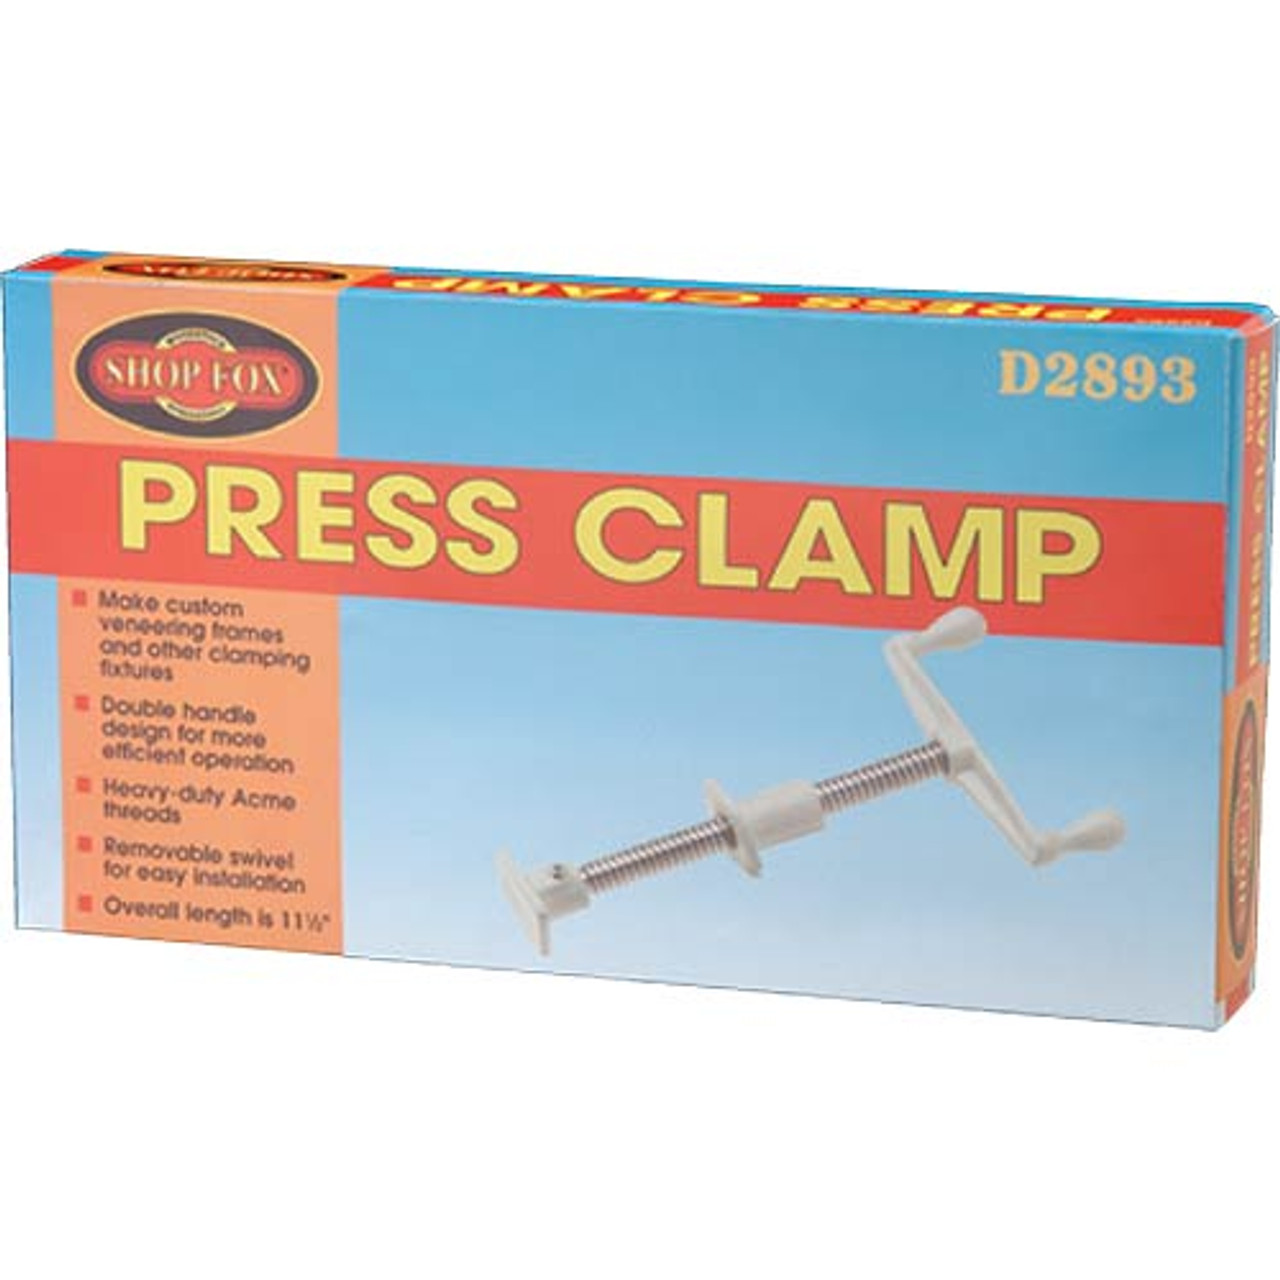 Woodstock Shop Fox Press Clamp D2893